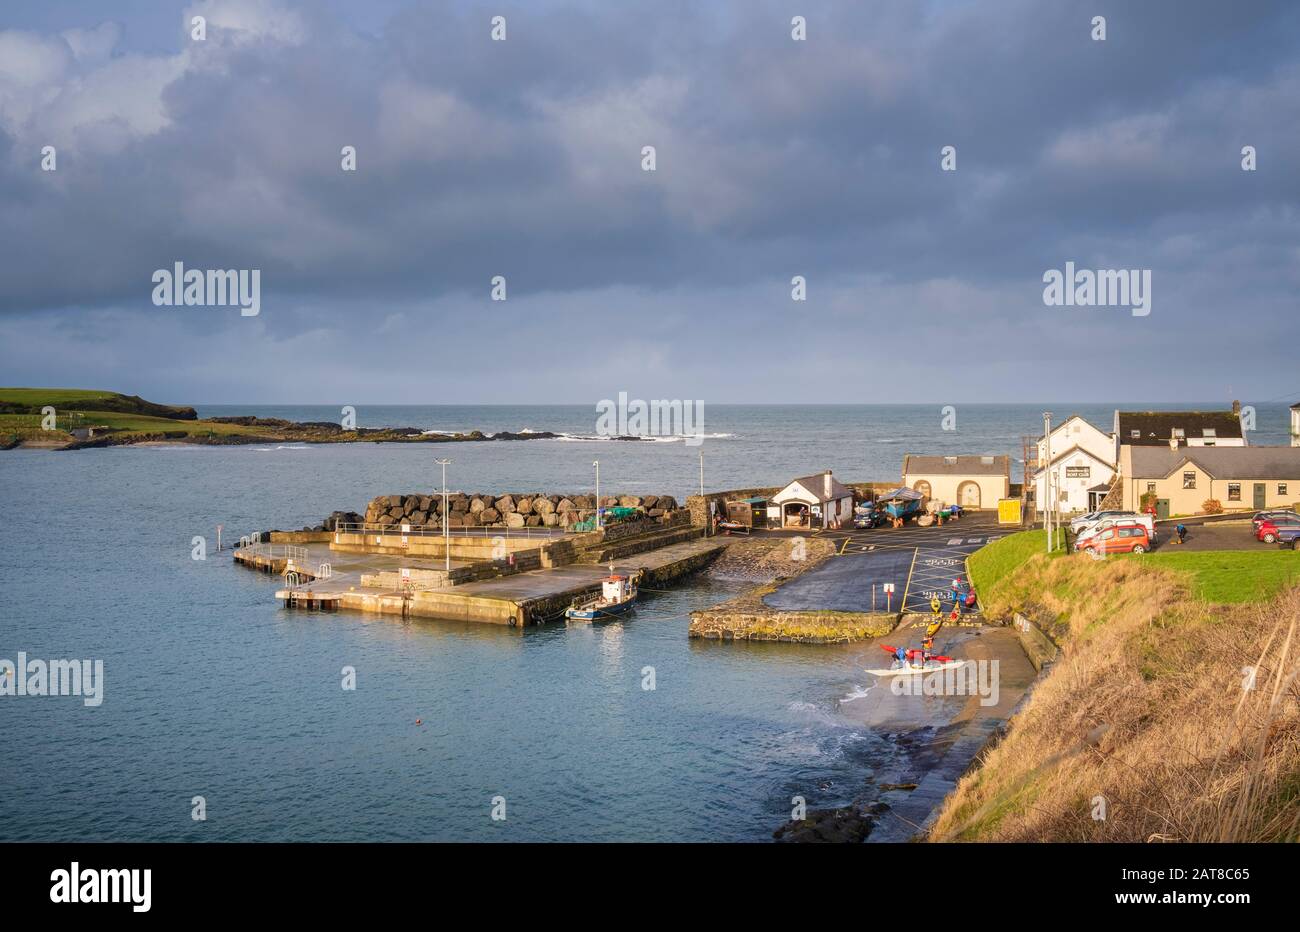 La baie et le port de Portballepere un petit village de bord de mer dans le comté d'Antrim, en Irlande du Nord Banque D'Images